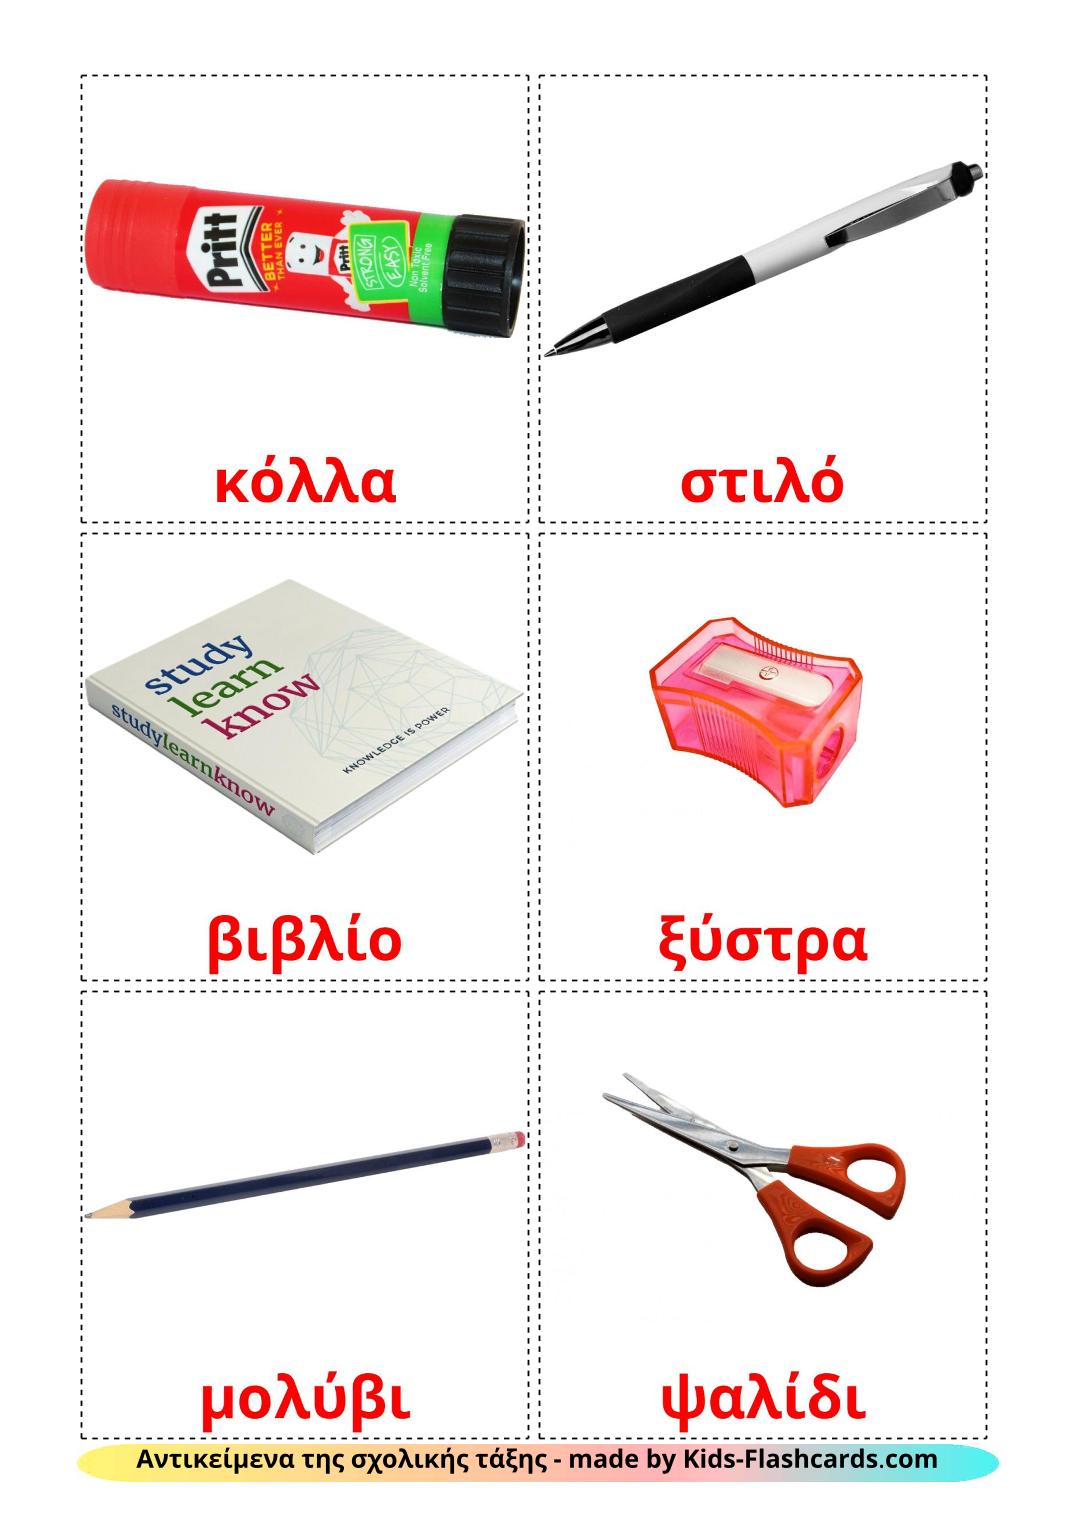 Objetos de sala de aula - 36 Flashcards gregoes gratuitos para impressão